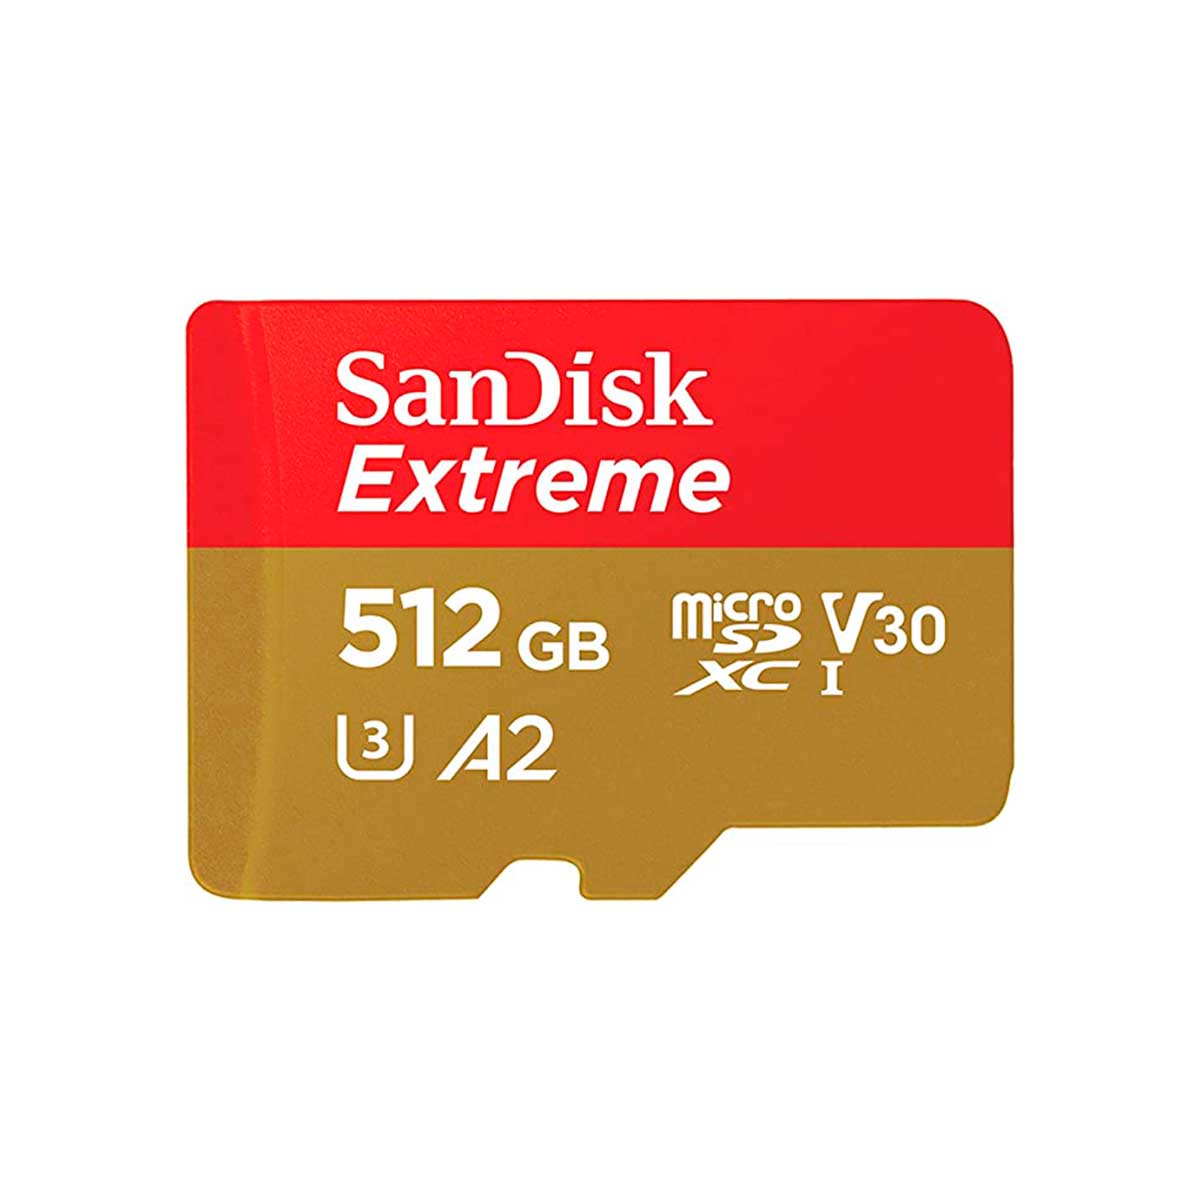 Sandisk Extreme microSDXC 512GB